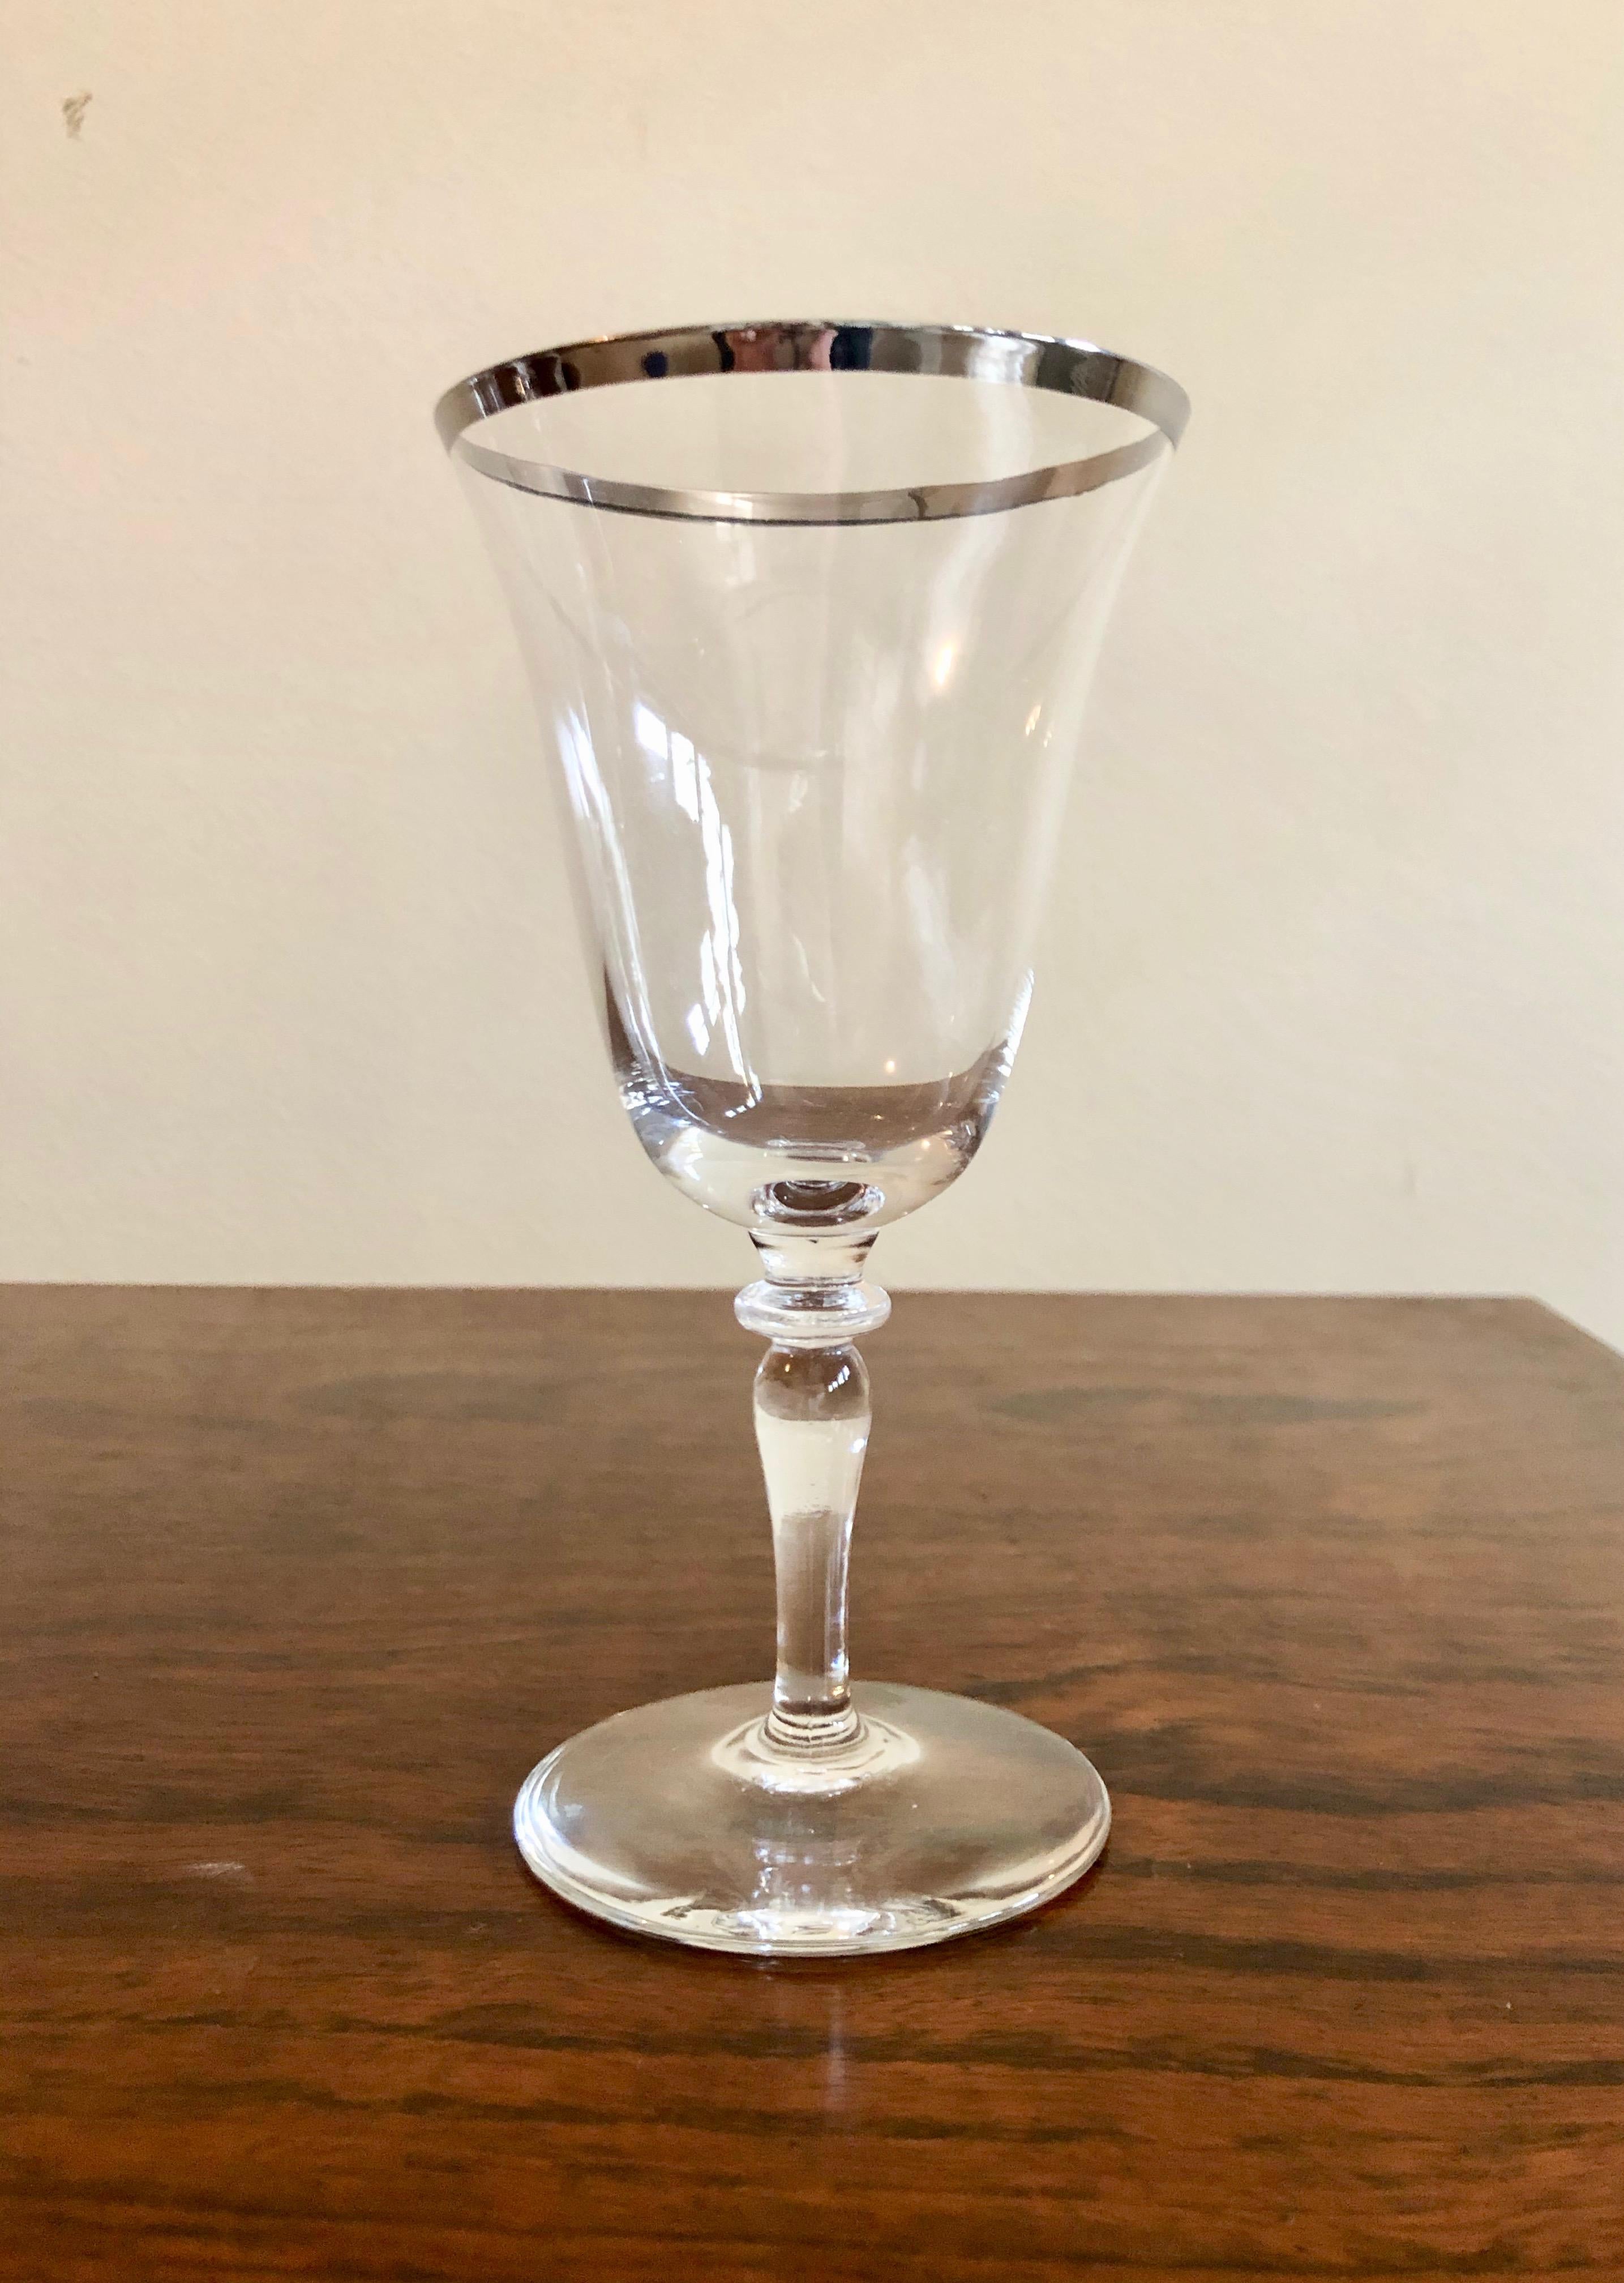 silver rim wine glasses